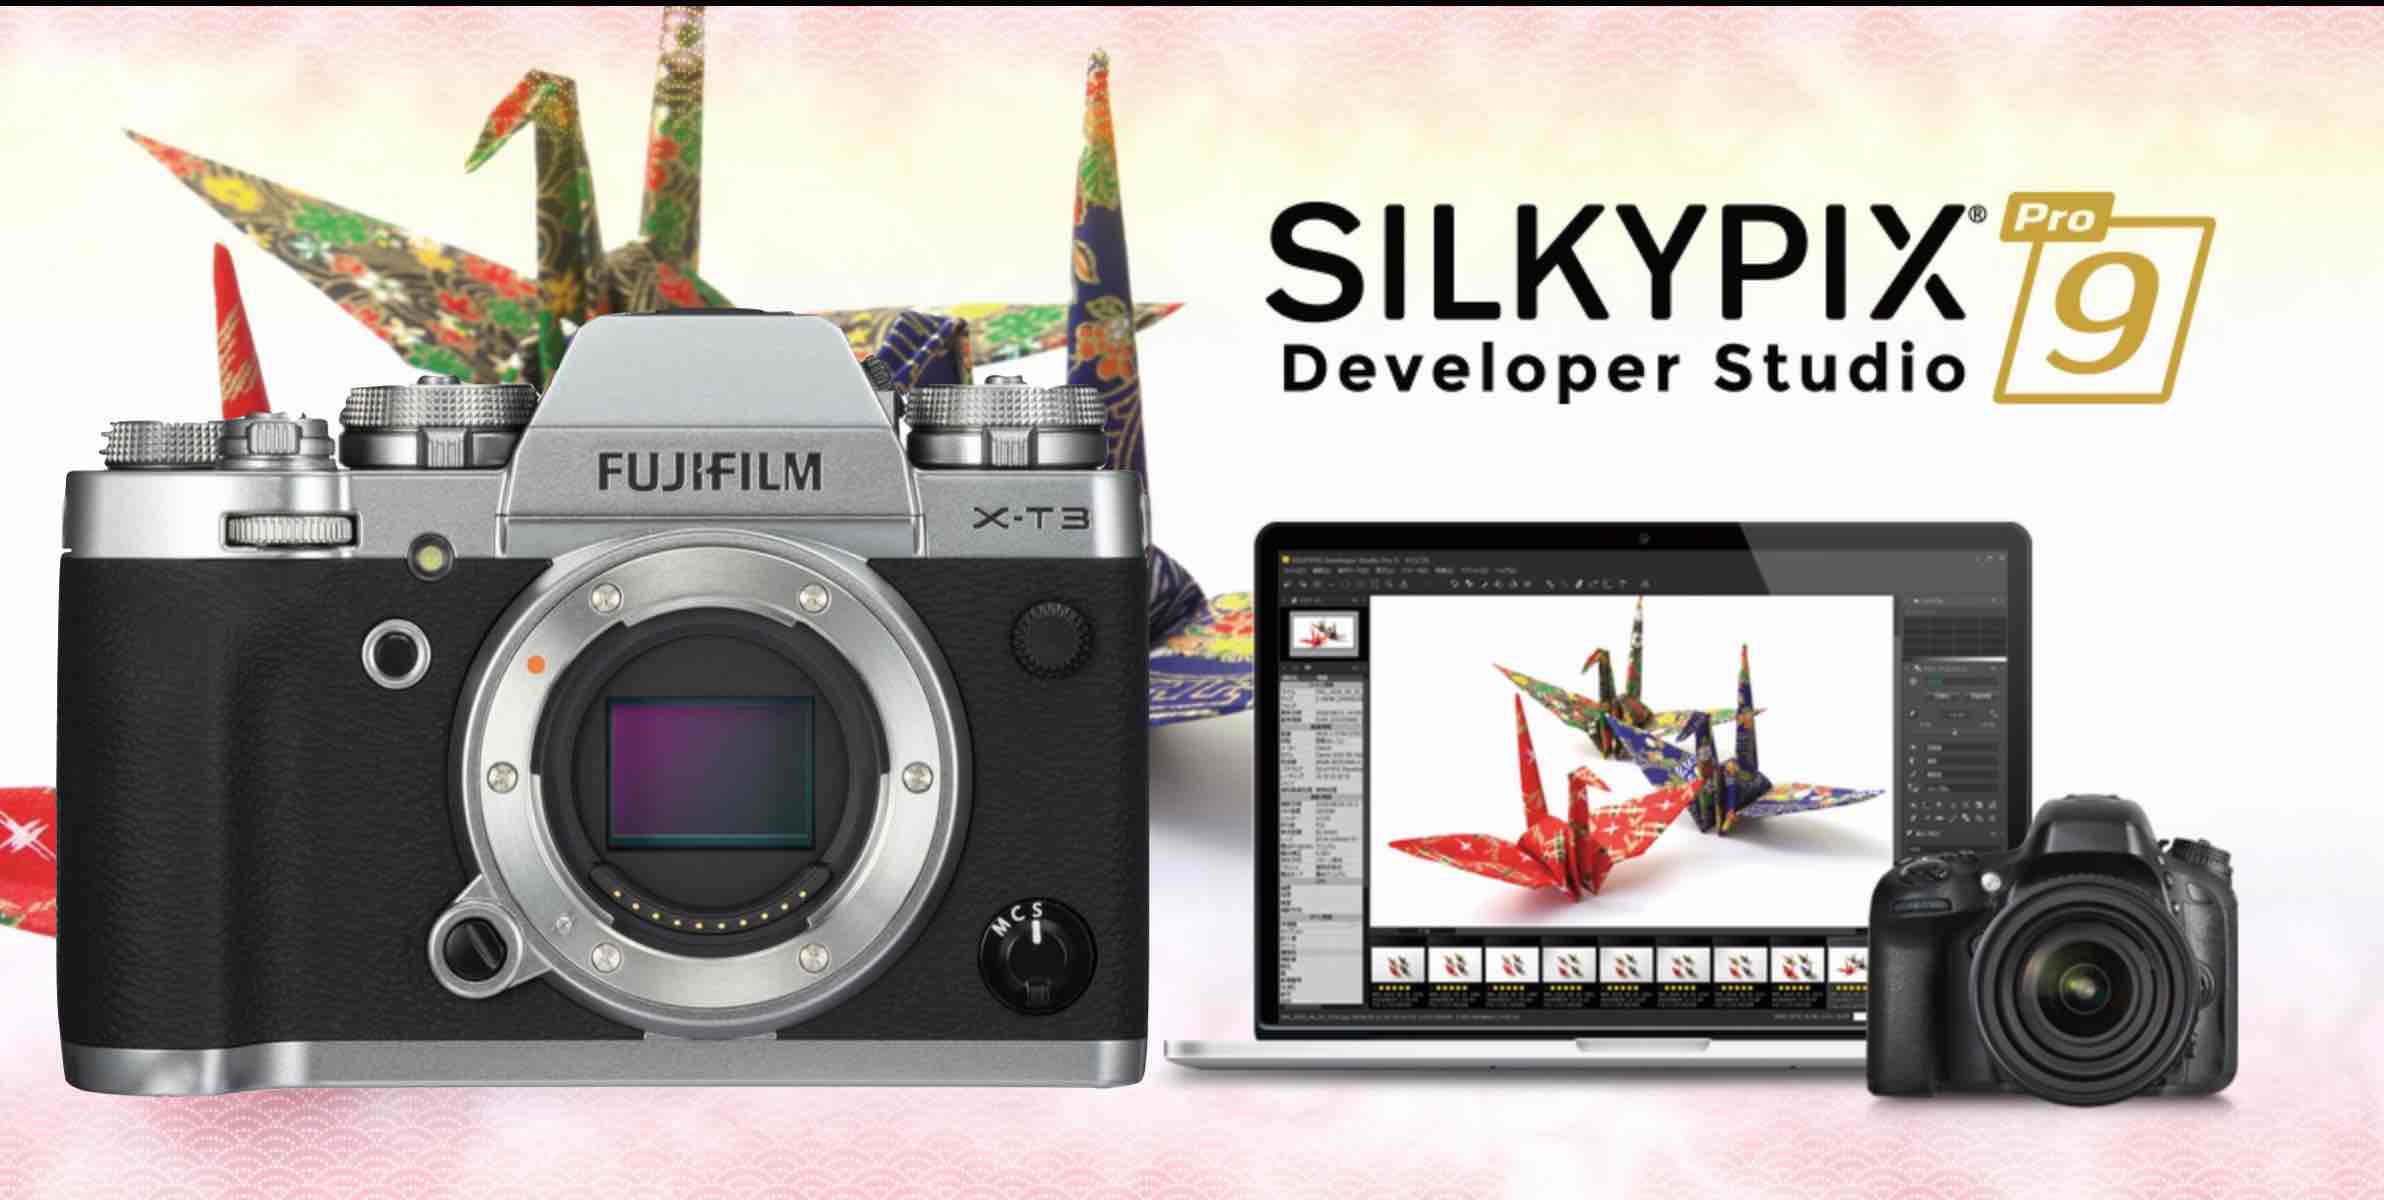 Fujifilm support. SILKYPIX developer Studio Pro for Fujifilm. Fujifilm Studio. Pro Studio Fujifilm. Fujifilm ad.